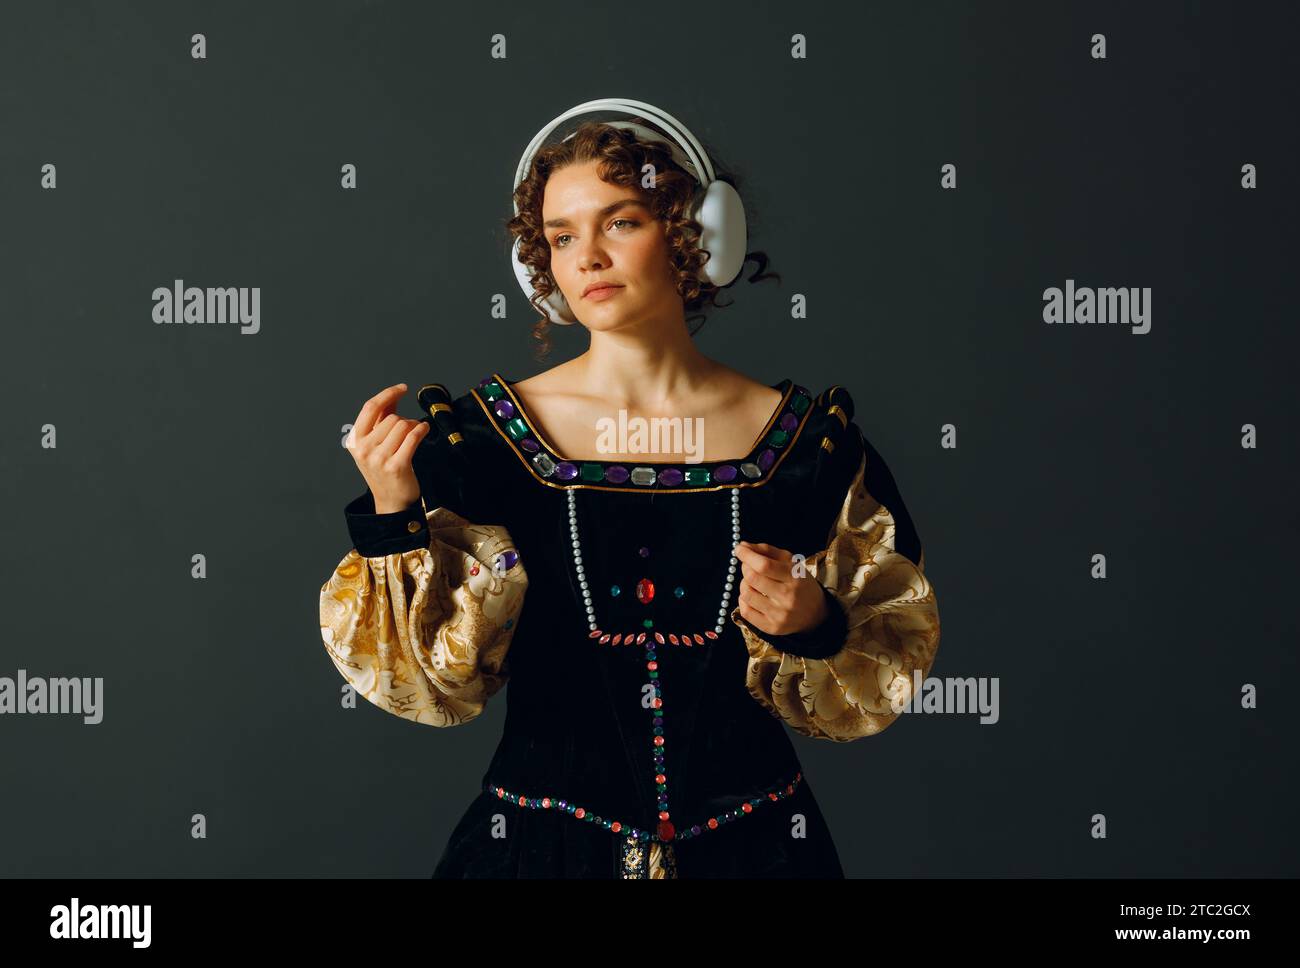 Porträt einer jungen Aristokratin mit Kopfhörern auf dem Kopf und mittelalterlichem Kleid lauscht klassischer Musik Stockfoto